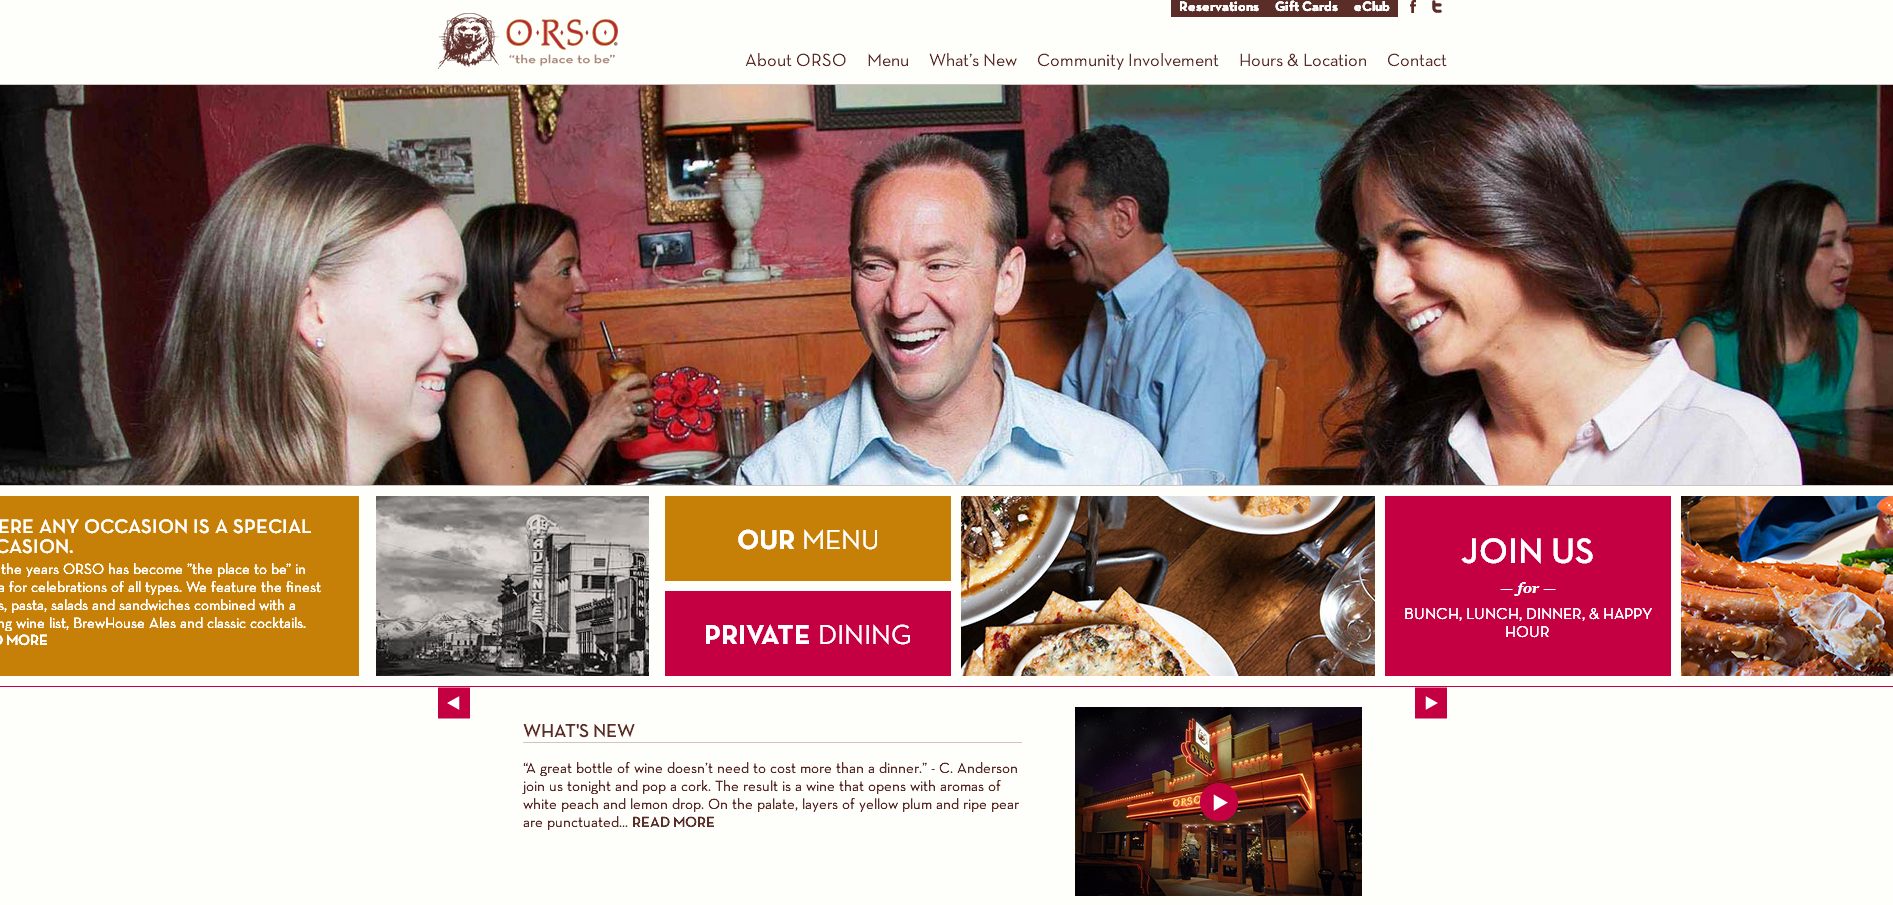 ORSO website